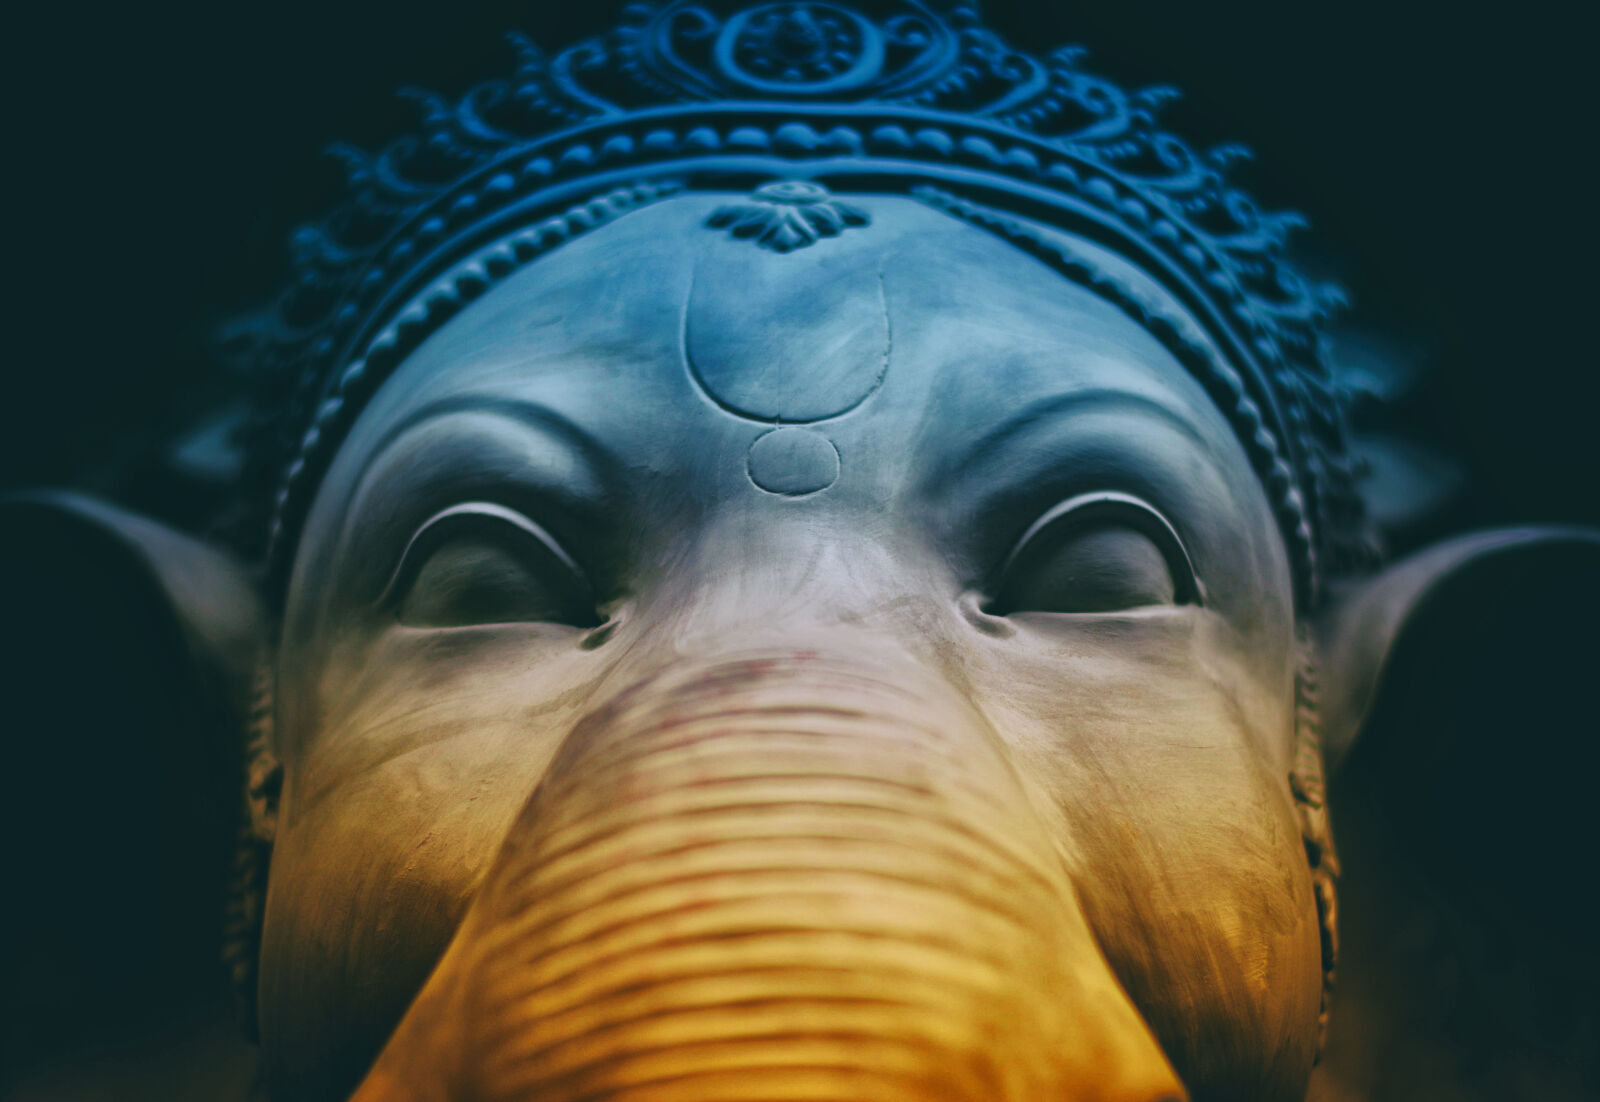 Nikon AF-S Nikkor 50mm F1.8G sample photo. Elephant, sculpture photography